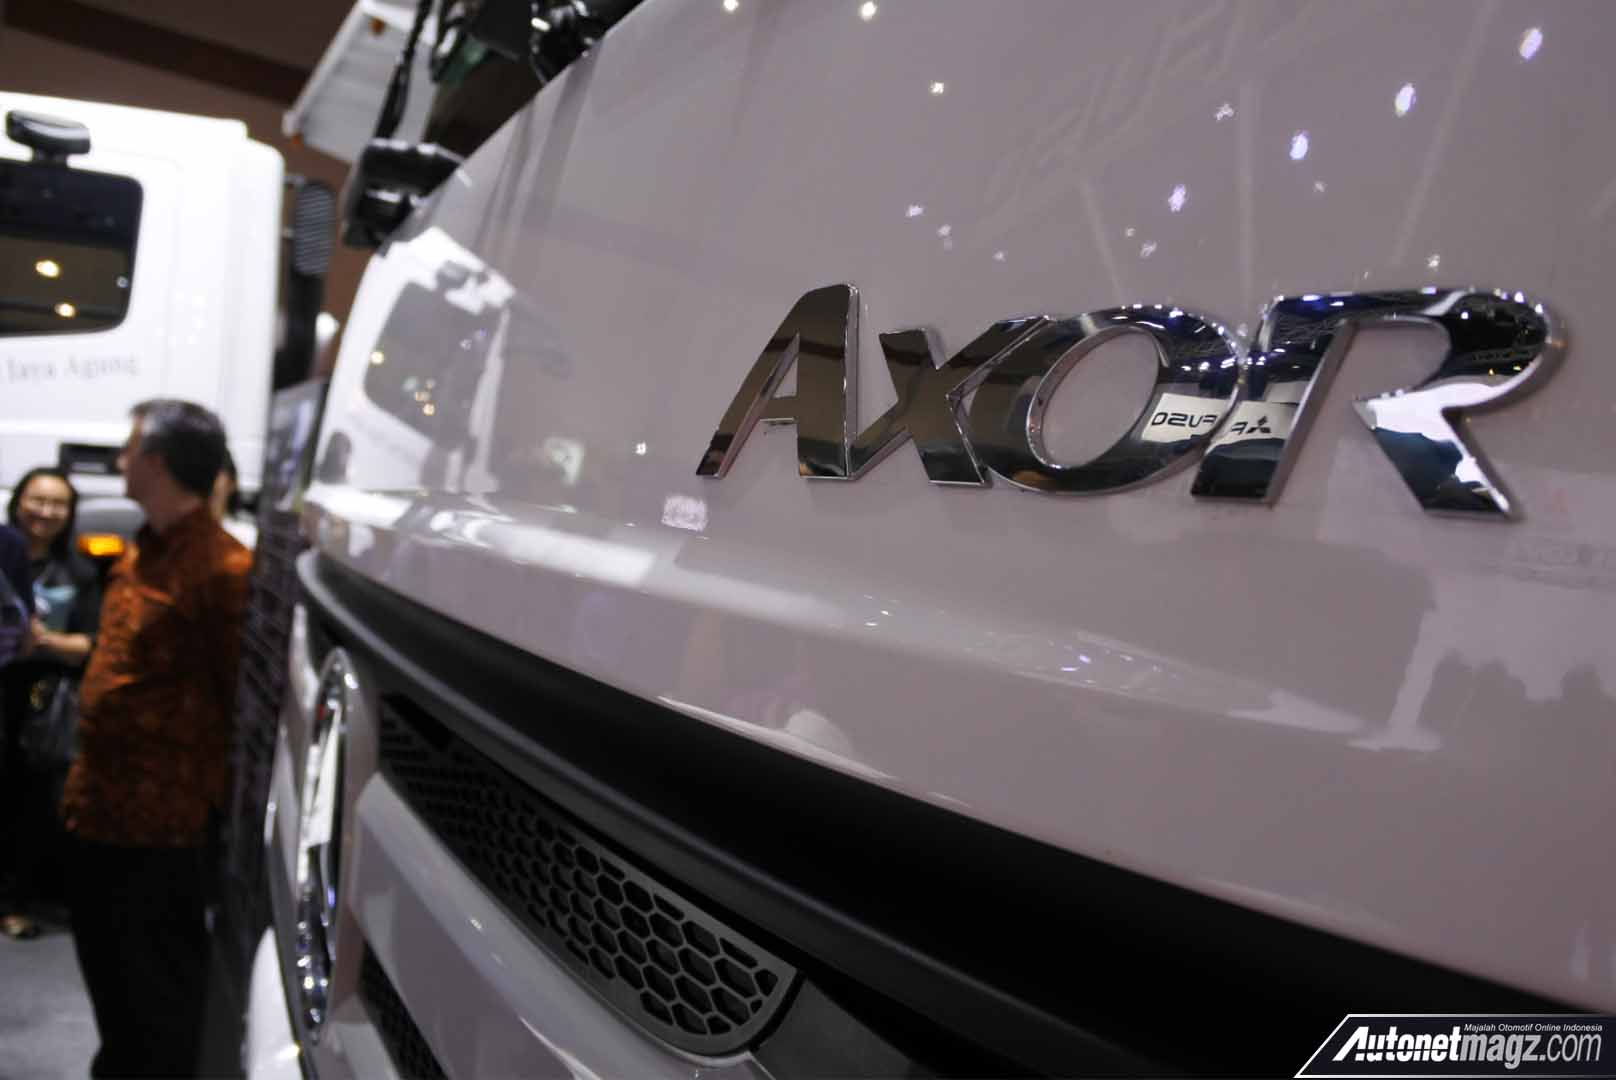 Berita, emblem Mercedes-Benz Axor 2528 R: GIICOMVEC 2018 : Mercedes-Benz Resmi Luncurkan Axor 2528 R CKD